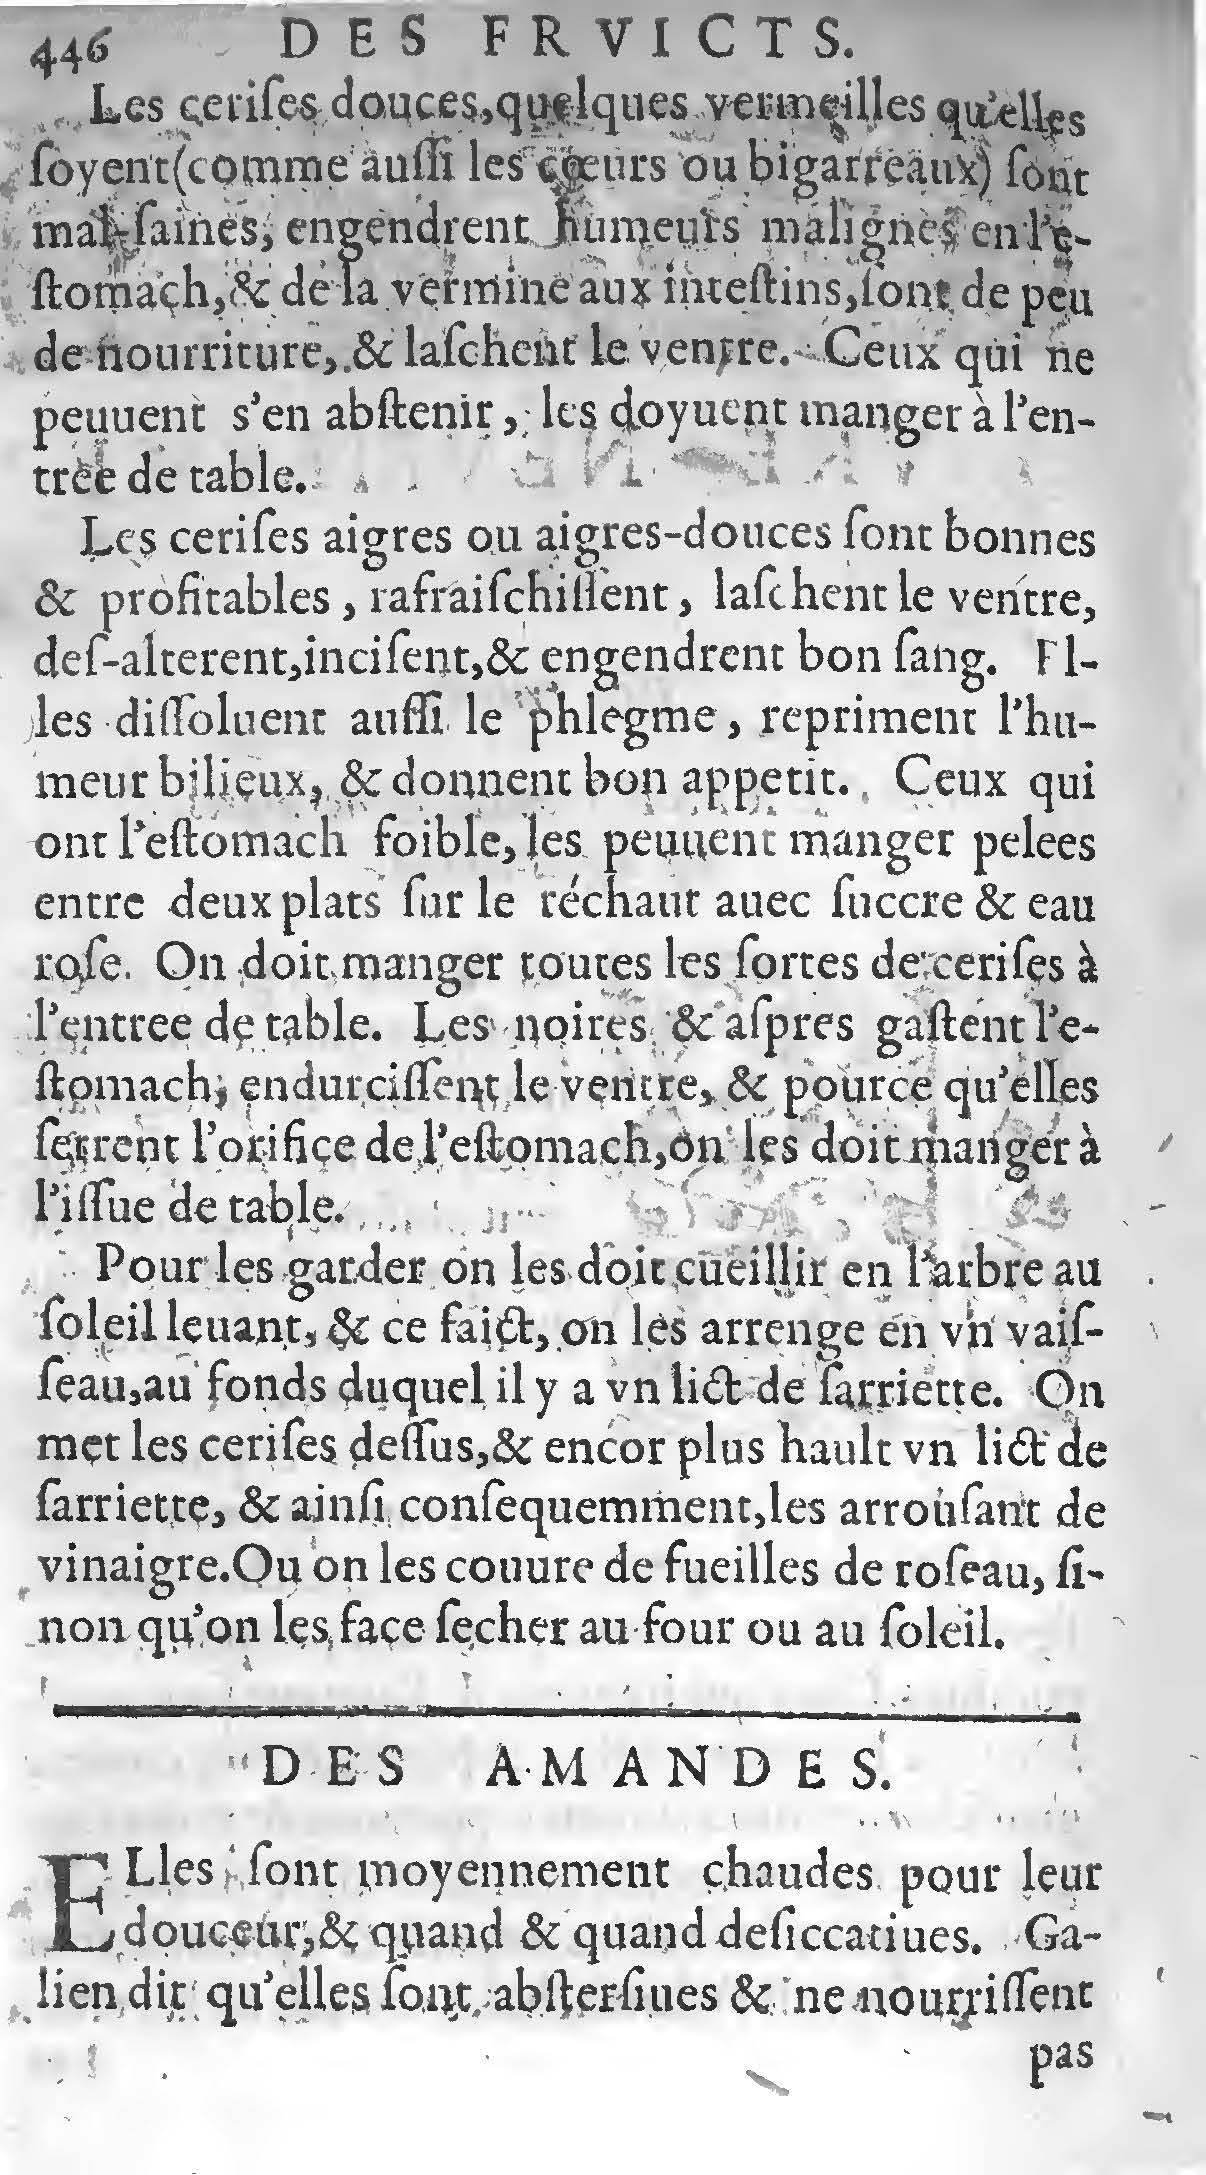 1607 Étienne Servain et Jean Antoine Huguetan - Trésor de santé ou ménage de la vie humaine - BIU Santé_Page_466.jpg